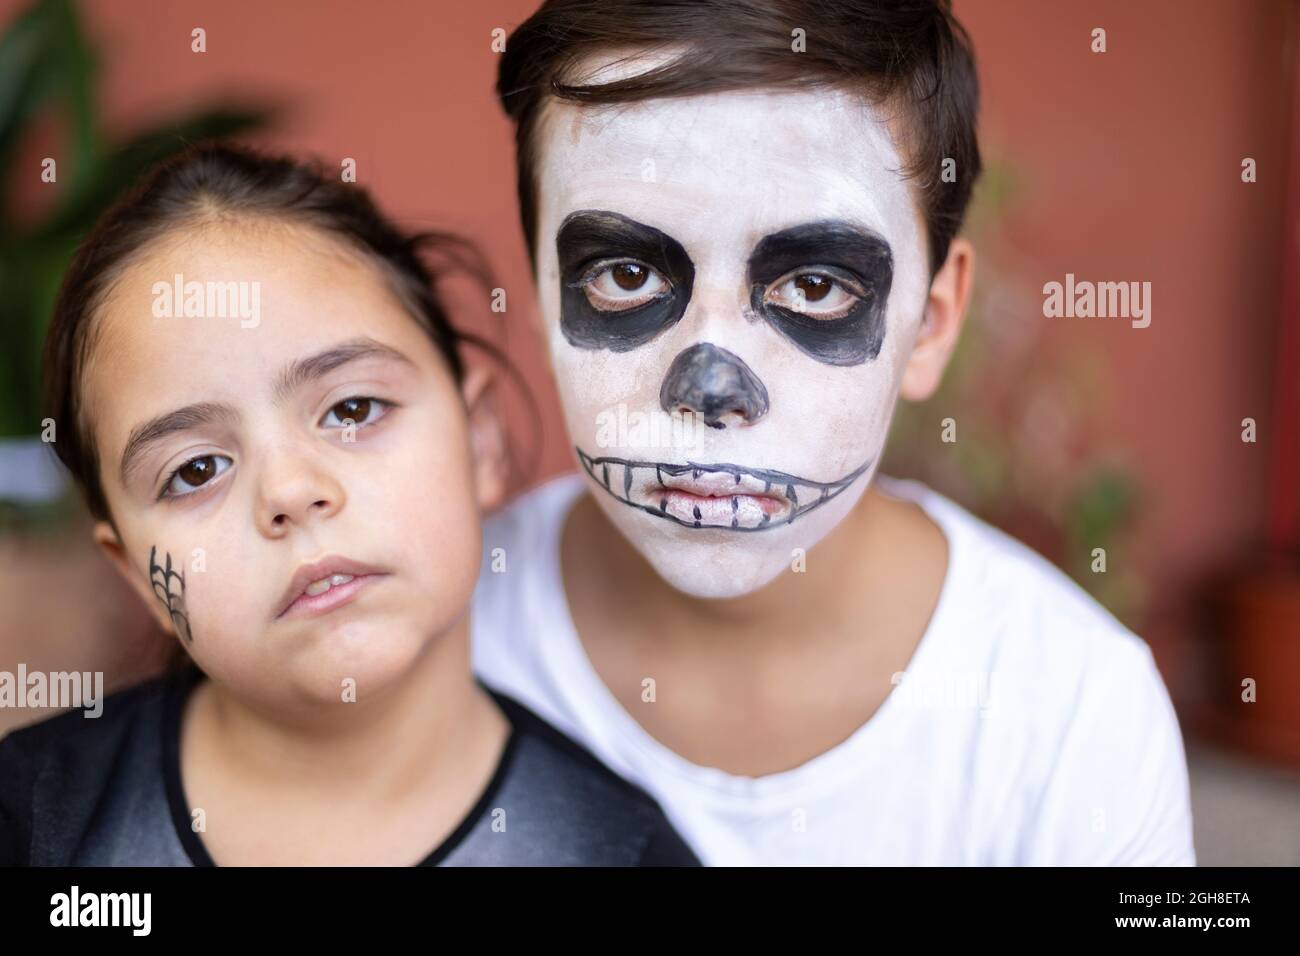 Gros plan portrait d'un garçon et d'une petite fille de race blanche avec maquillage pour le jour des morts. (Dia de los Muertos). Banque D'Images